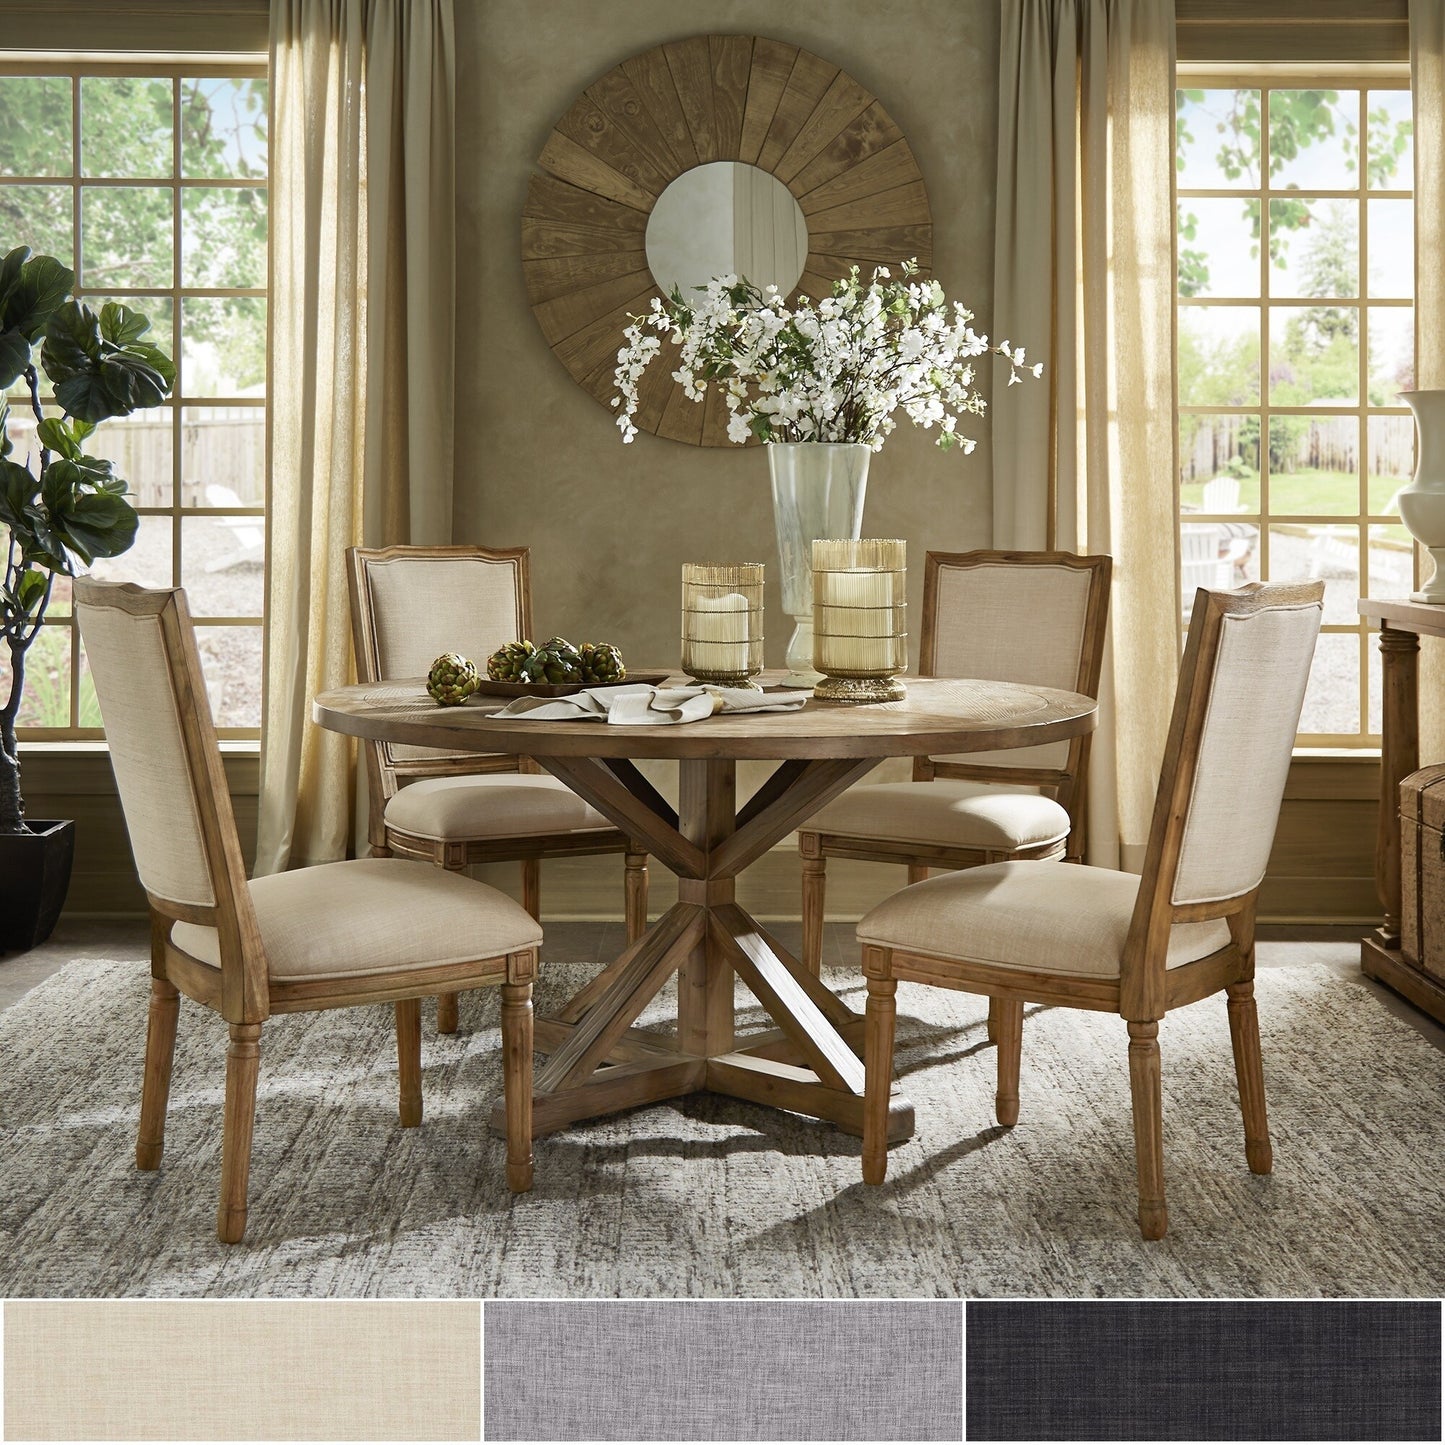 Round 5-Piece Dining Set - Dark Grey Linen, Ornate Chair Backs